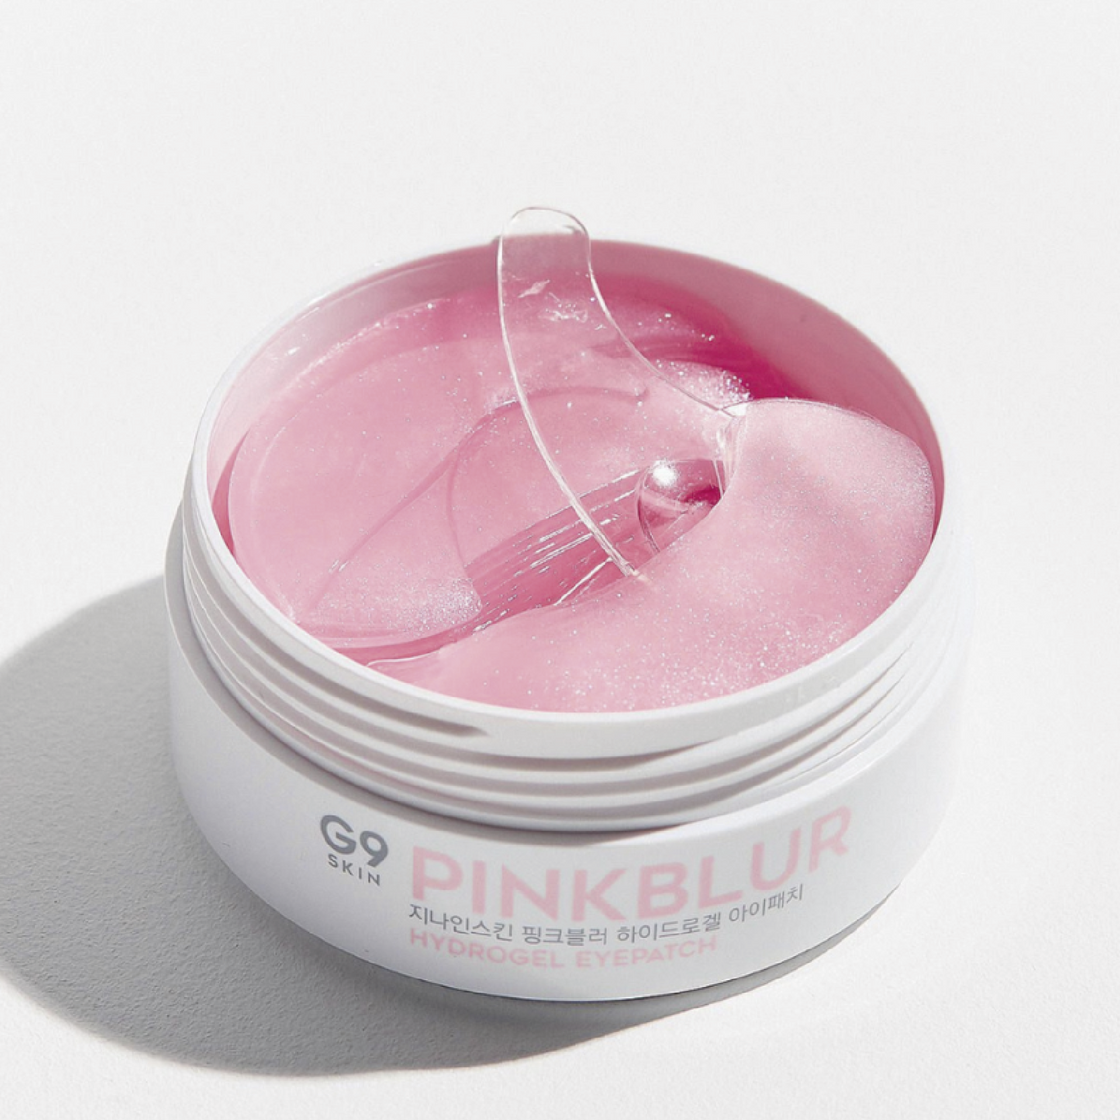 G9skin | Pink Blur Hydrogel eye Patch